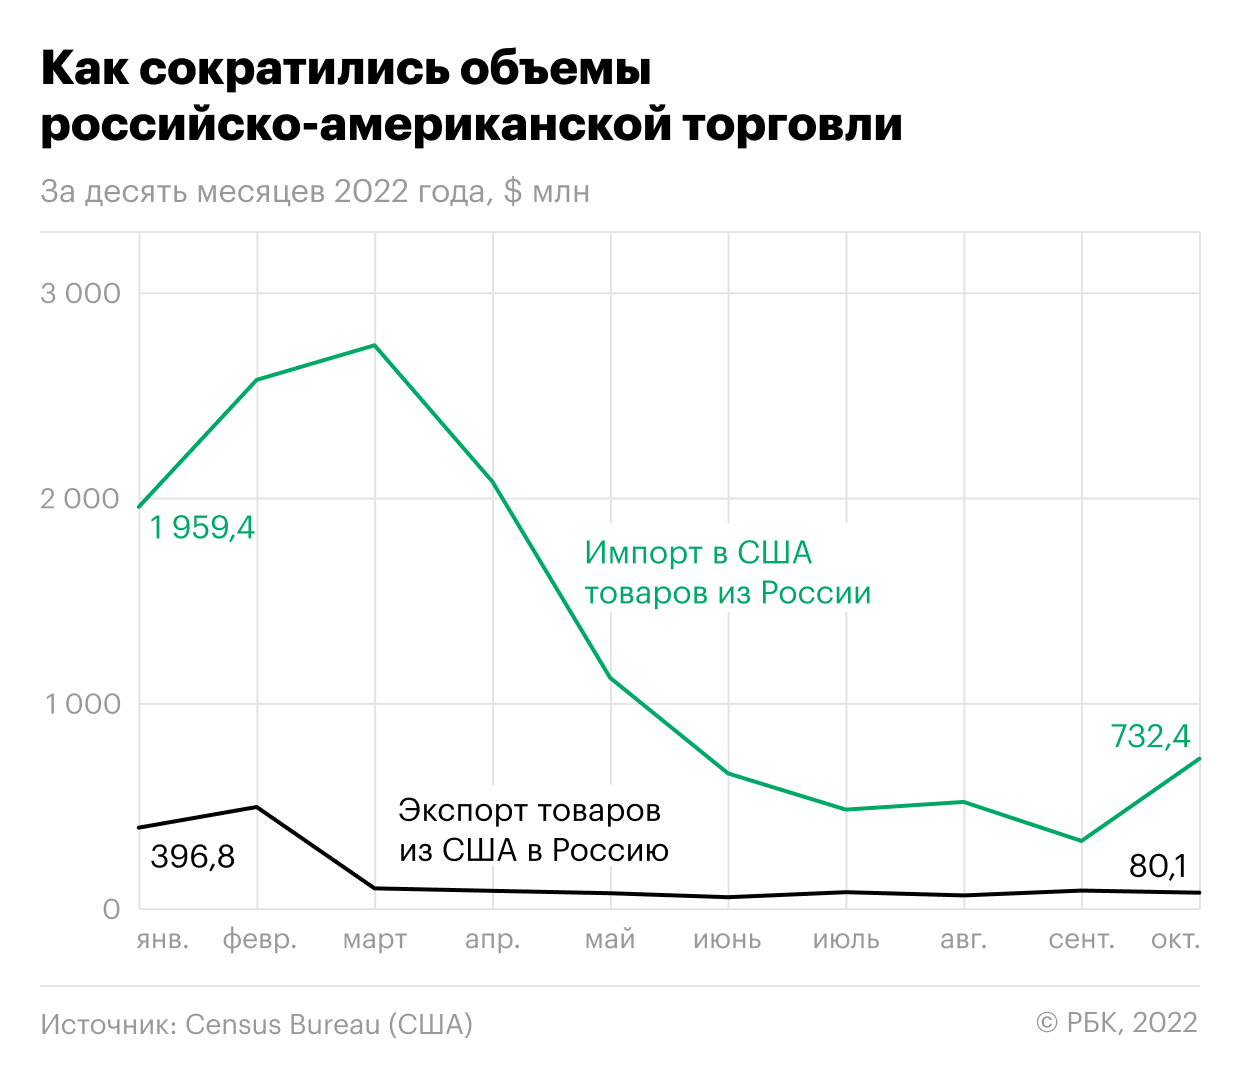 Как уран и палладий помогли России нарастить торговлю с США. Инфографика